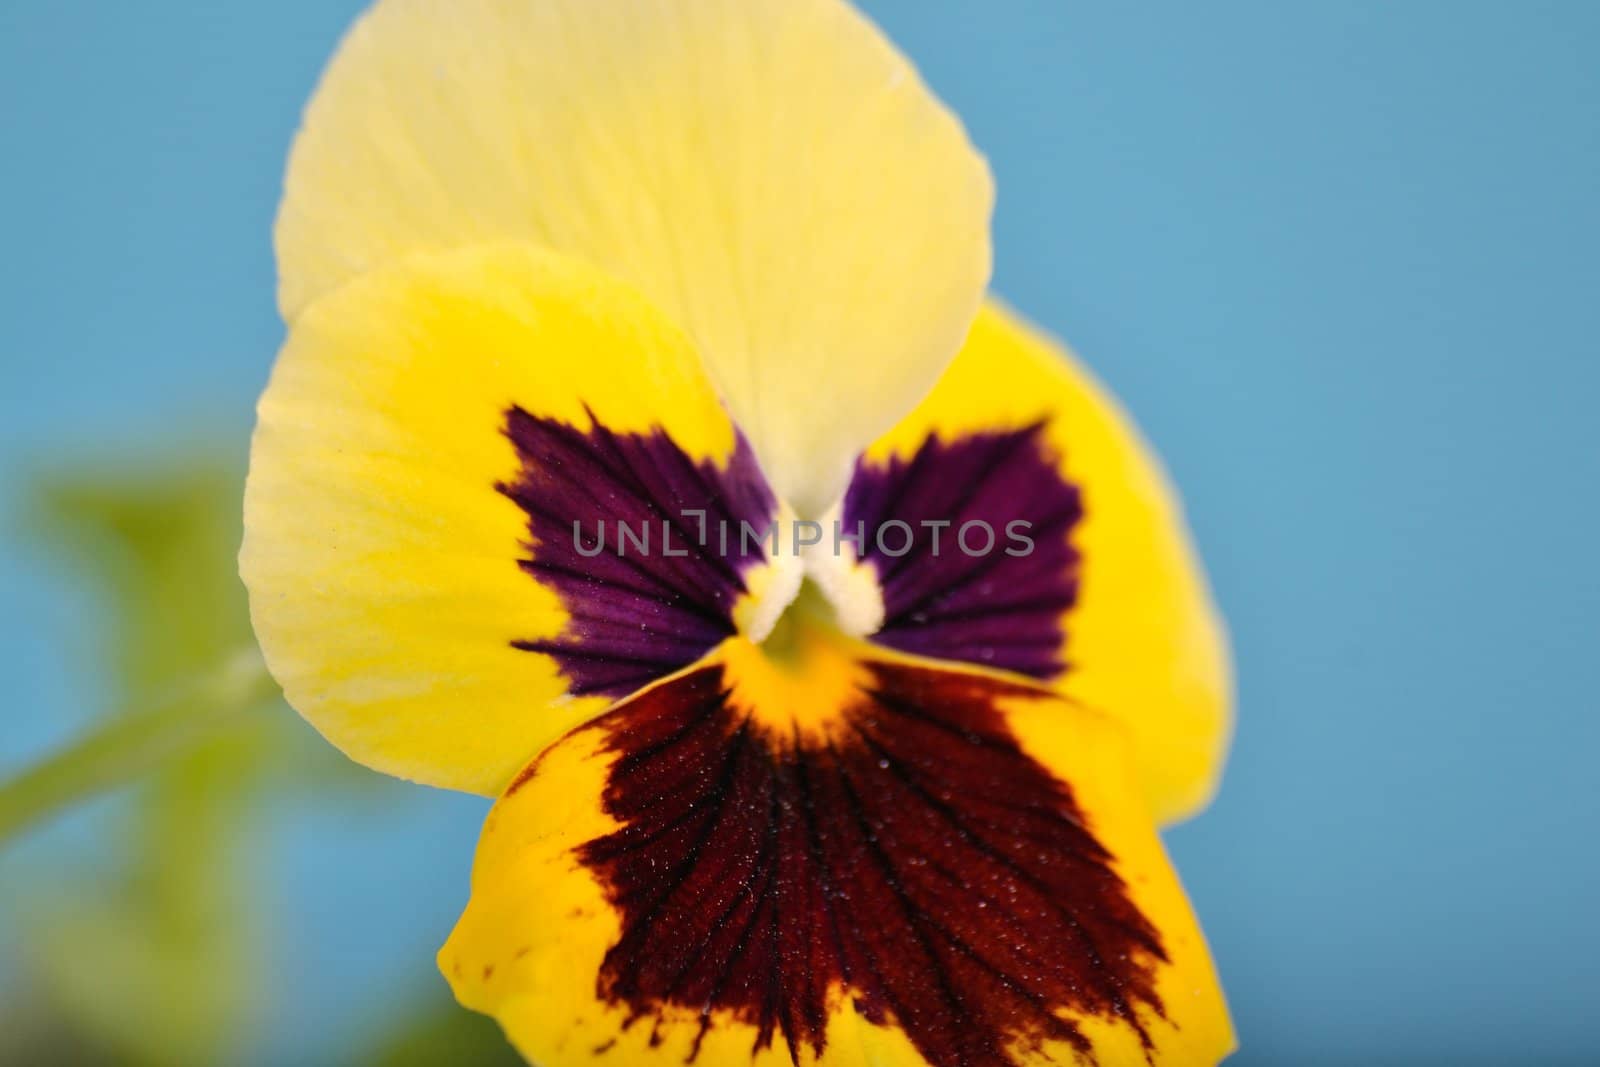 single pansy flower, photo taken in macro